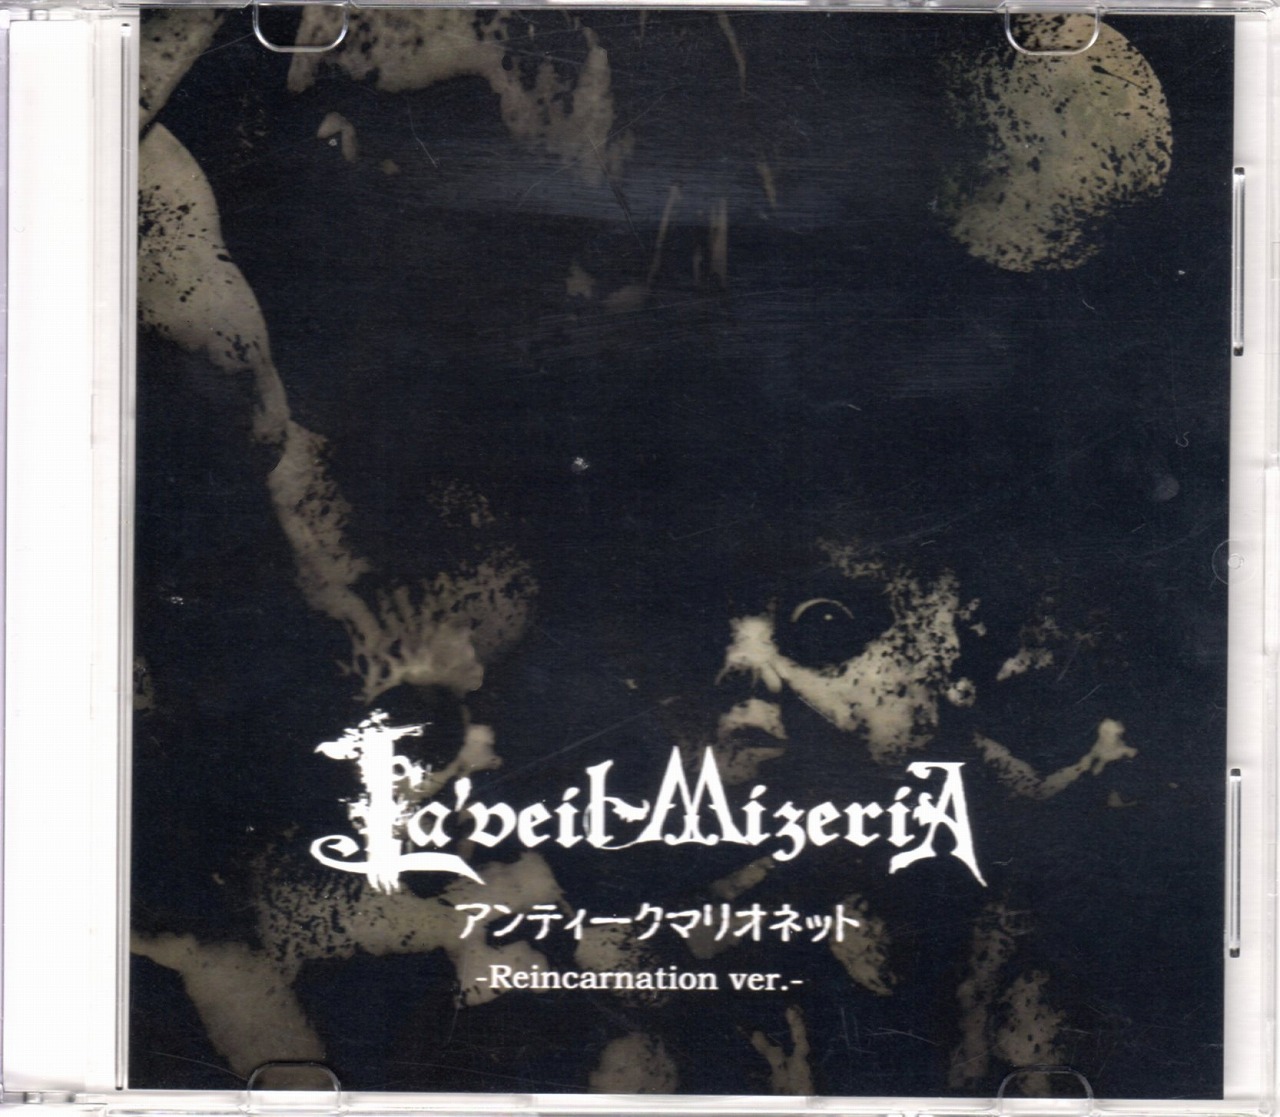 La'veil MizeriA ( ラヴェイルミザリア )  の CD アンティークマリオネット -Reincarnation ver.-